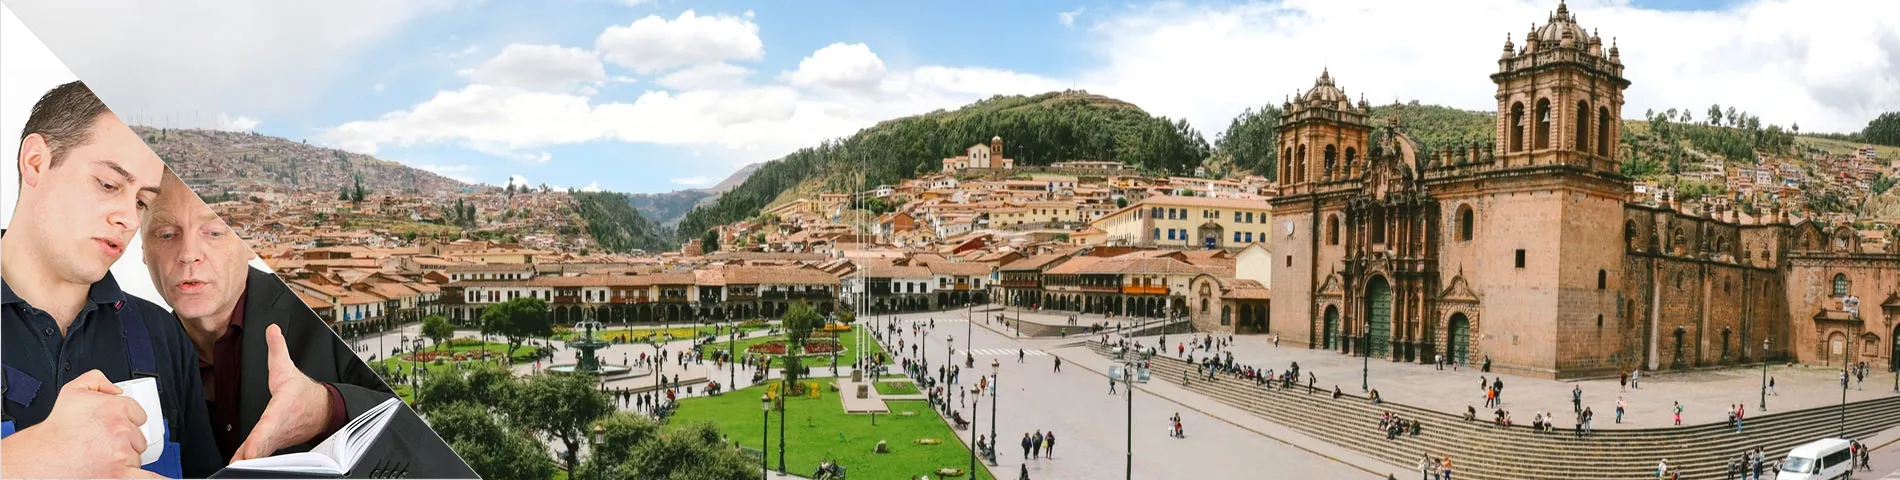 Cuzco - Einzelunterricht